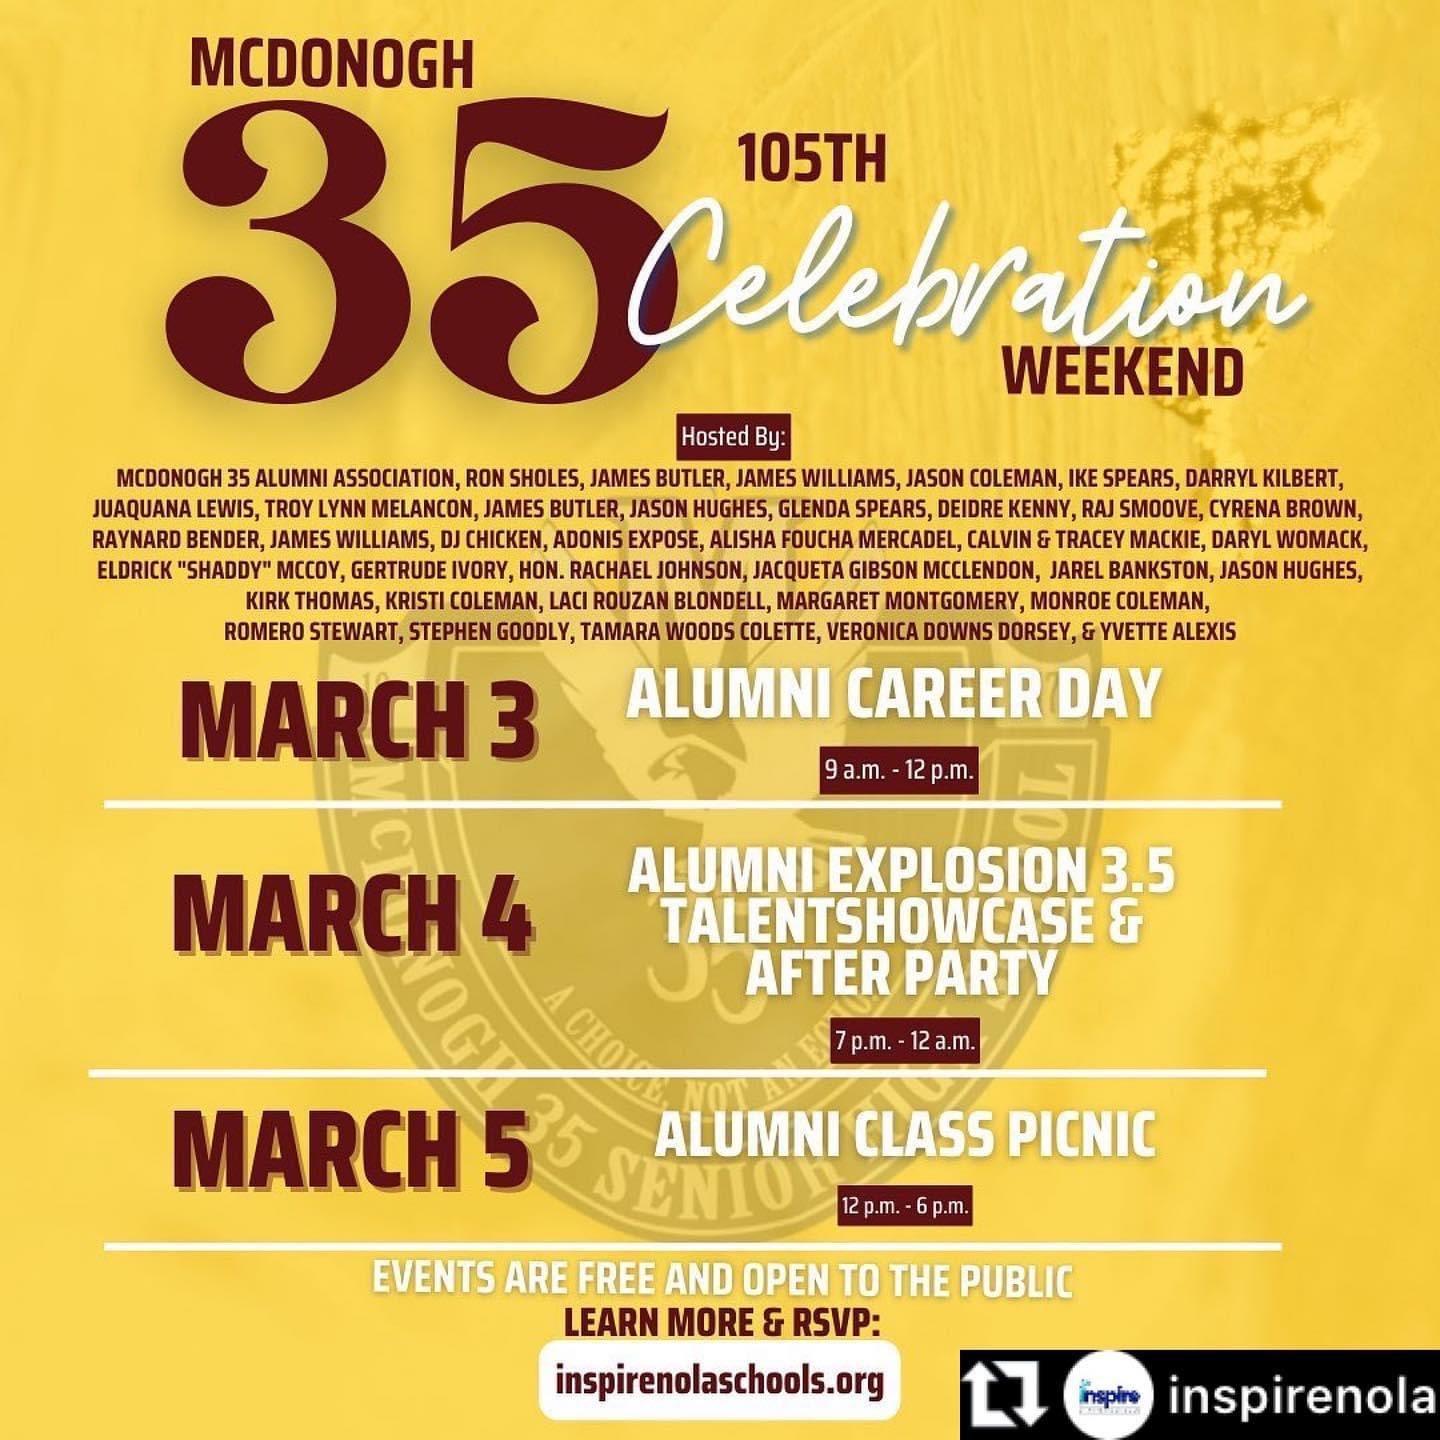 mcdonogh-35-senior-high-school-105th-celebration-weekend-mcdonogh-35-alumni-association